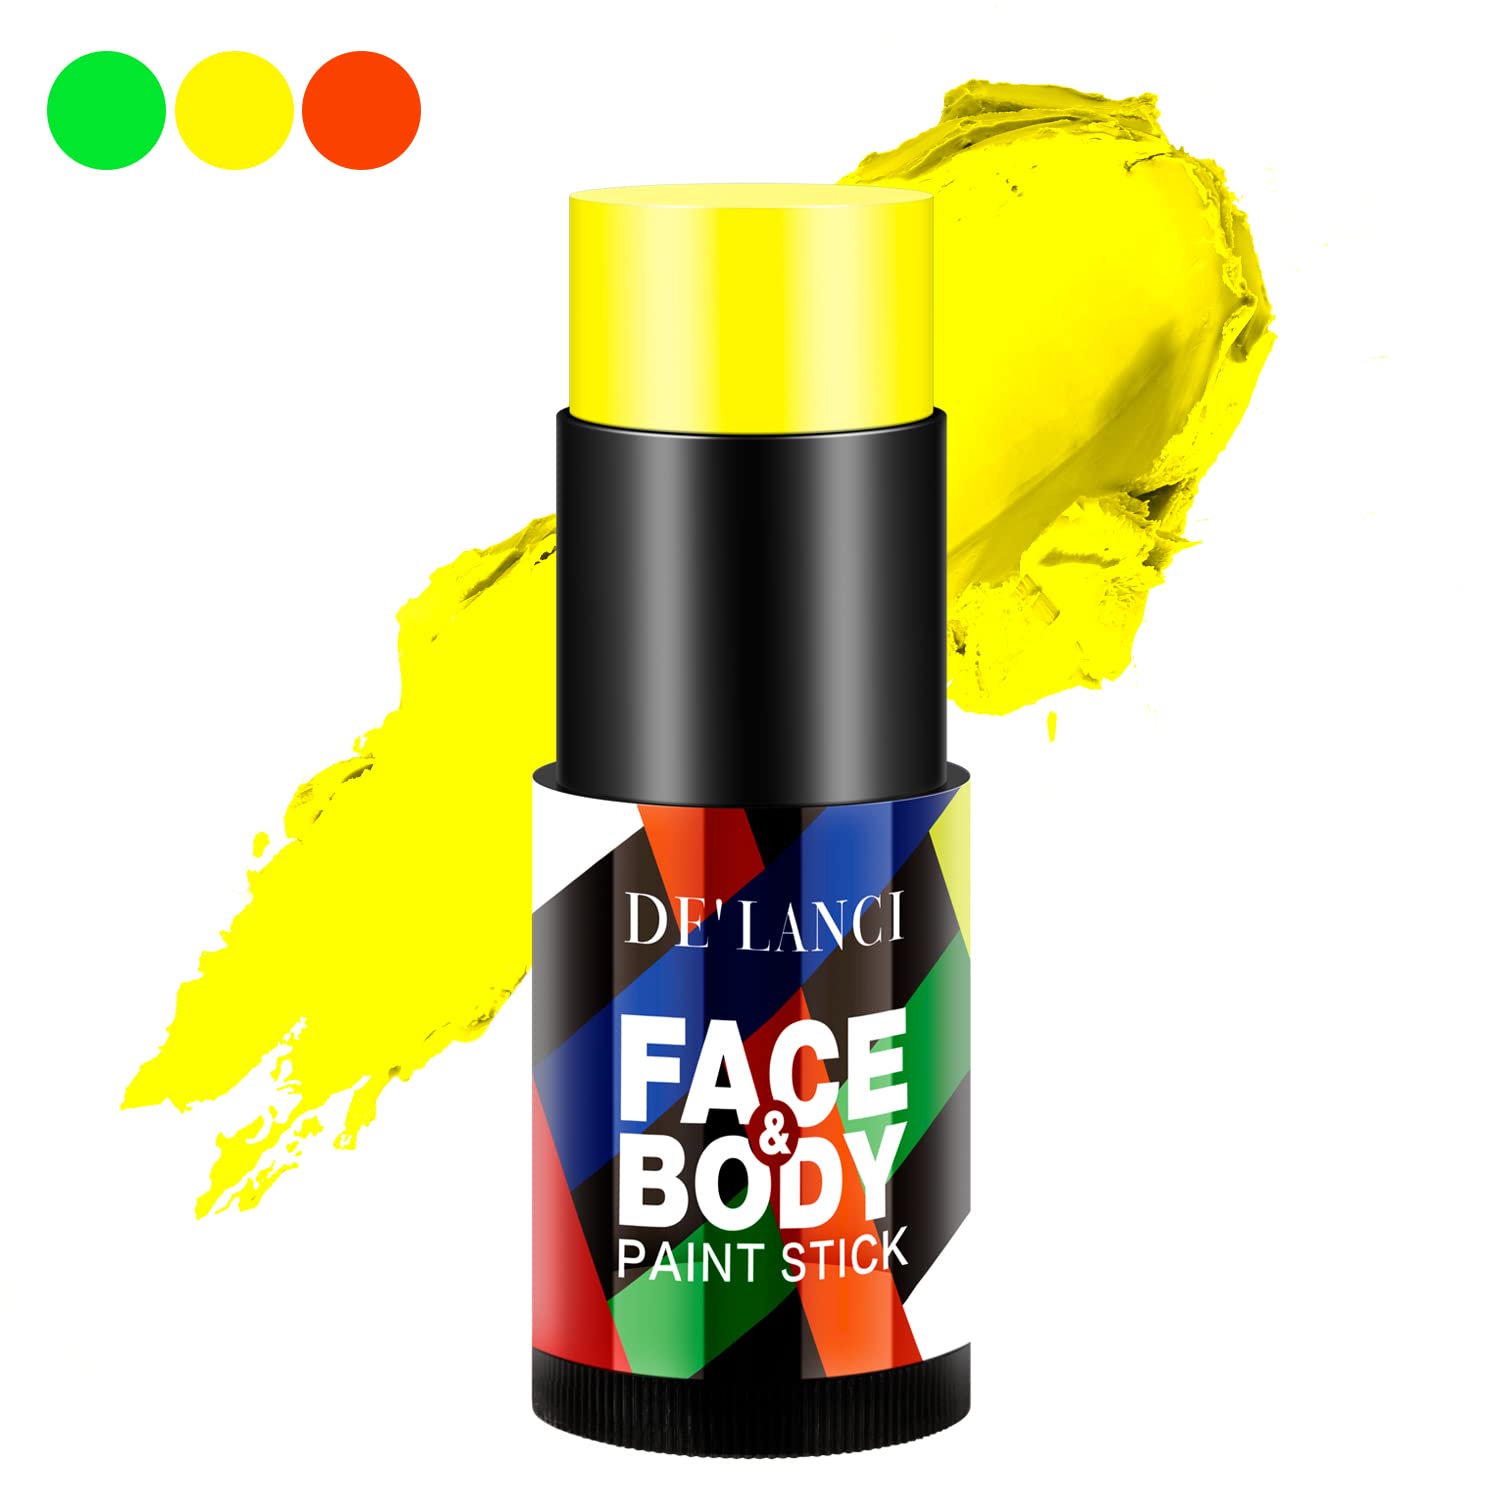 DE'LANCI Neon Yellow Face Paint Stick Cream Blendable Body Paint